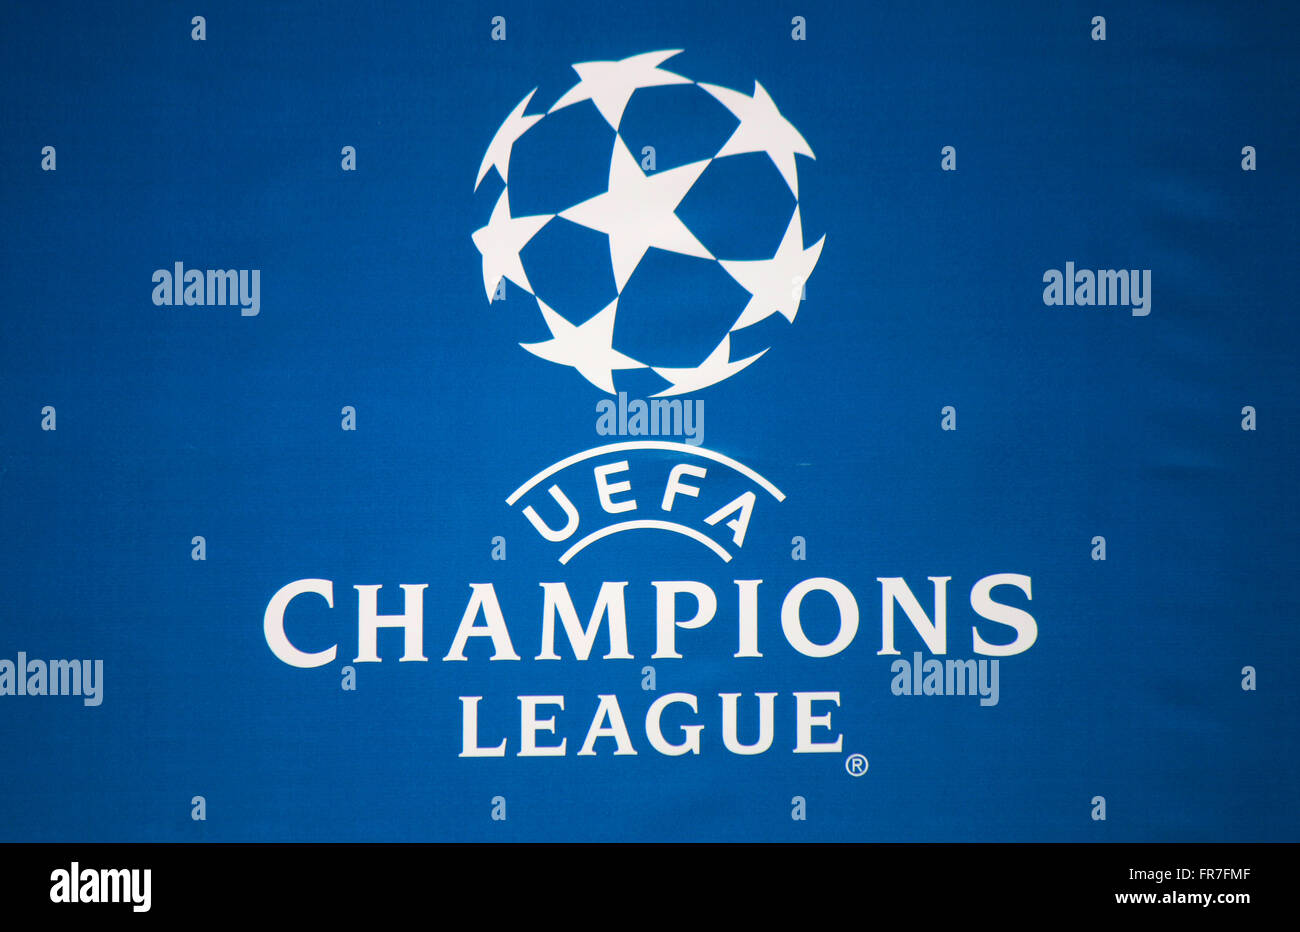 Champions League Logo Banque d'image et photos - Alamy